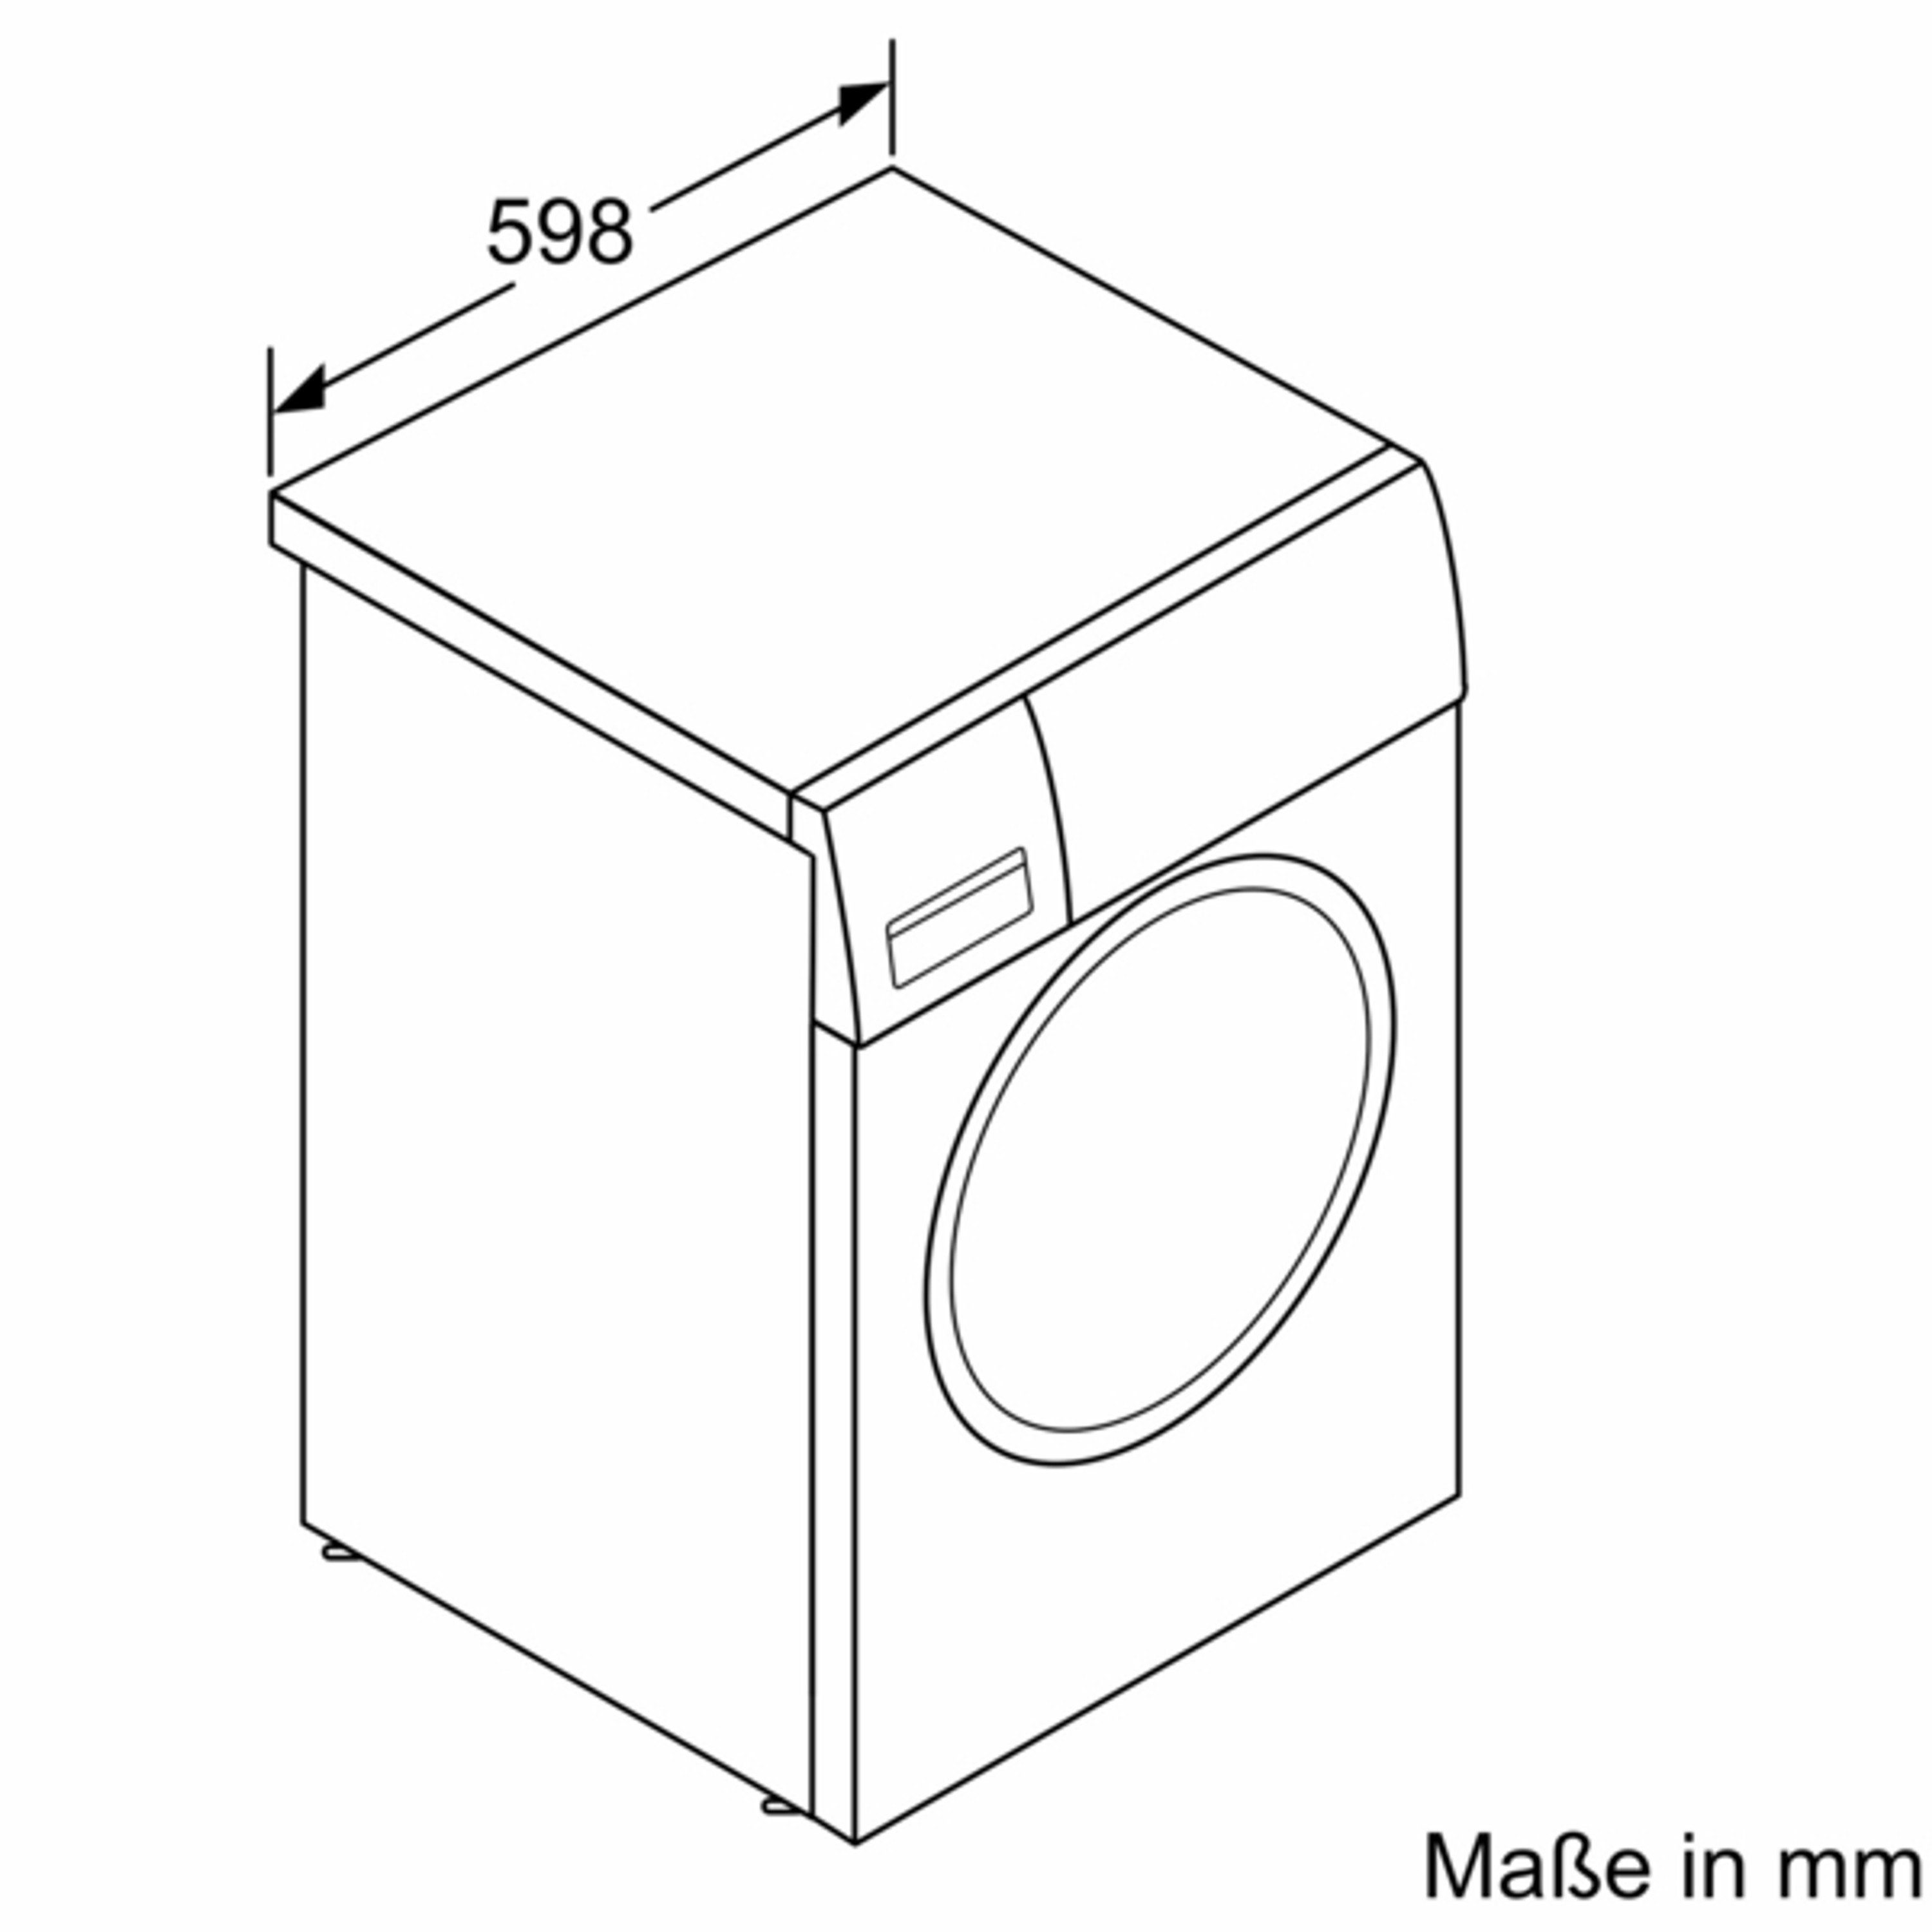 7 Nachlegefunktion Waschmaschine 1354 WM14N0H3, touchControl-Tasten, SIEMENS U/min, kg, iQdrive,